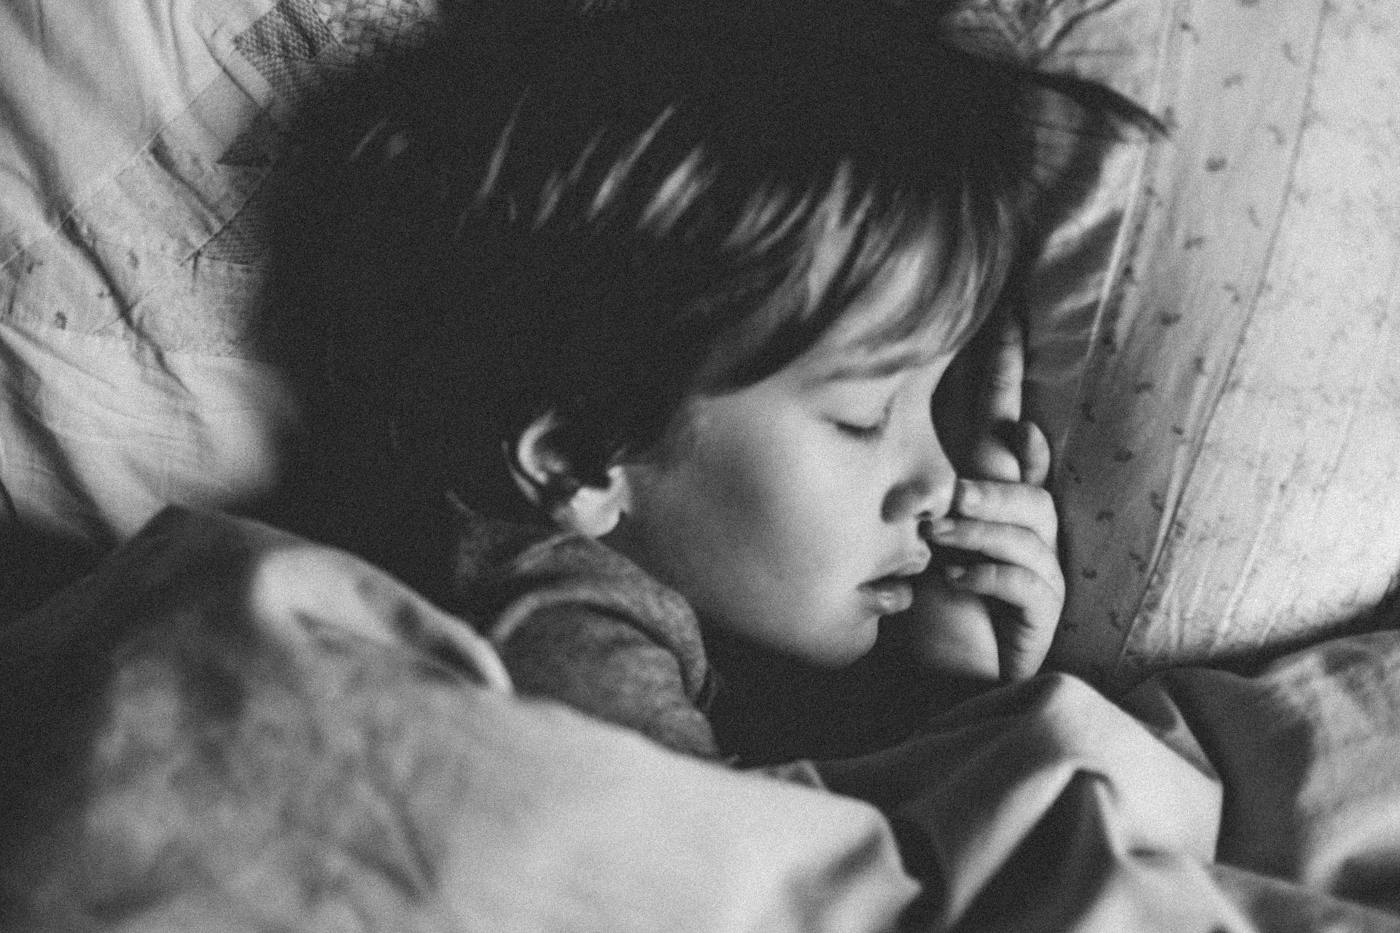 Rangkuman kebutuhan tidur anak usia 5 tahun